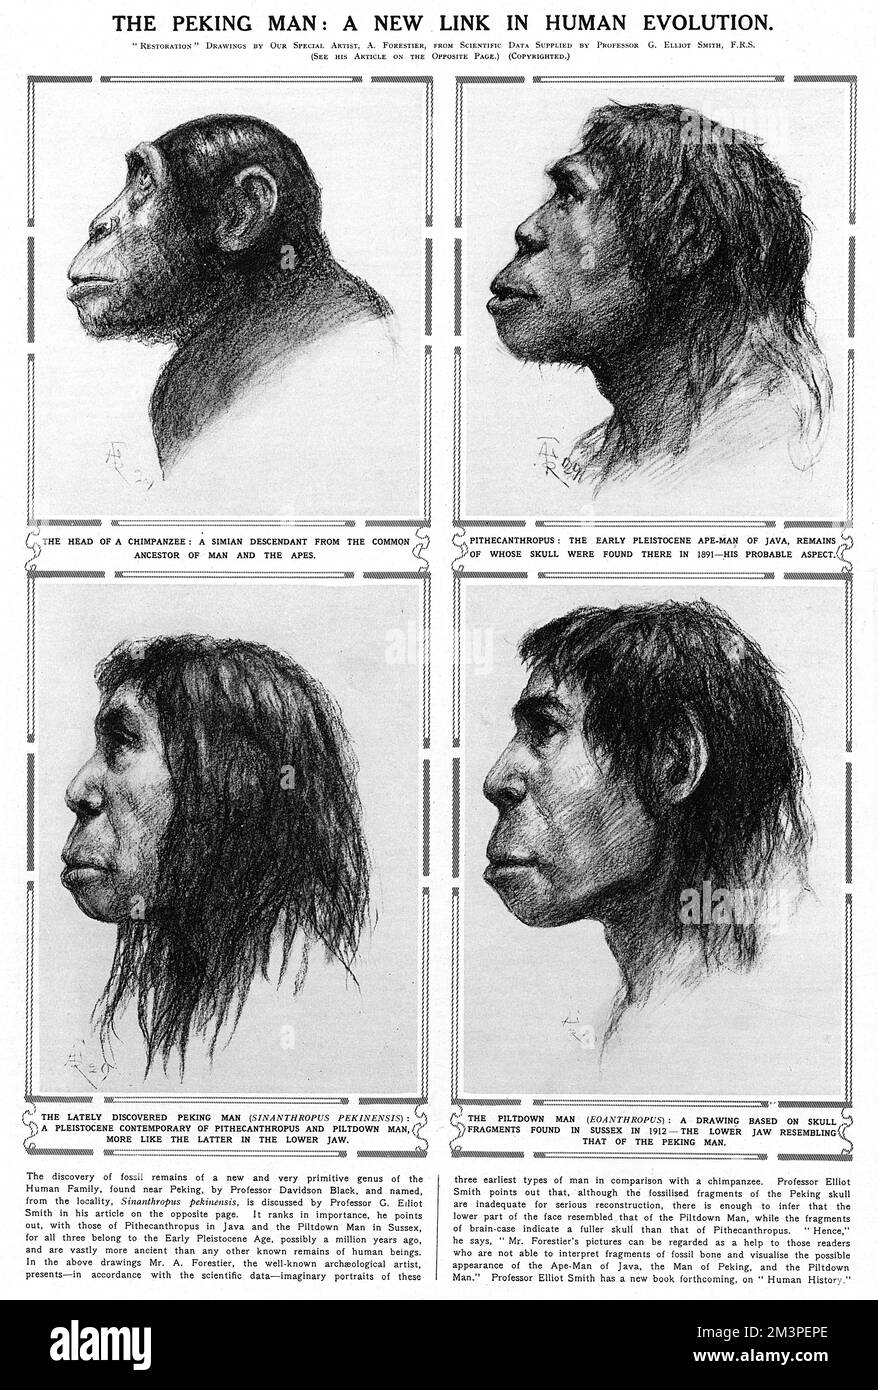 Peking Man Un nuovo legame nell'evoluzione umana. Scimpanzé, Pithecanthropus, Peking Man e Piltdown Man (in seguito mostrato come una bufala). Data: 1929 Foto Stock